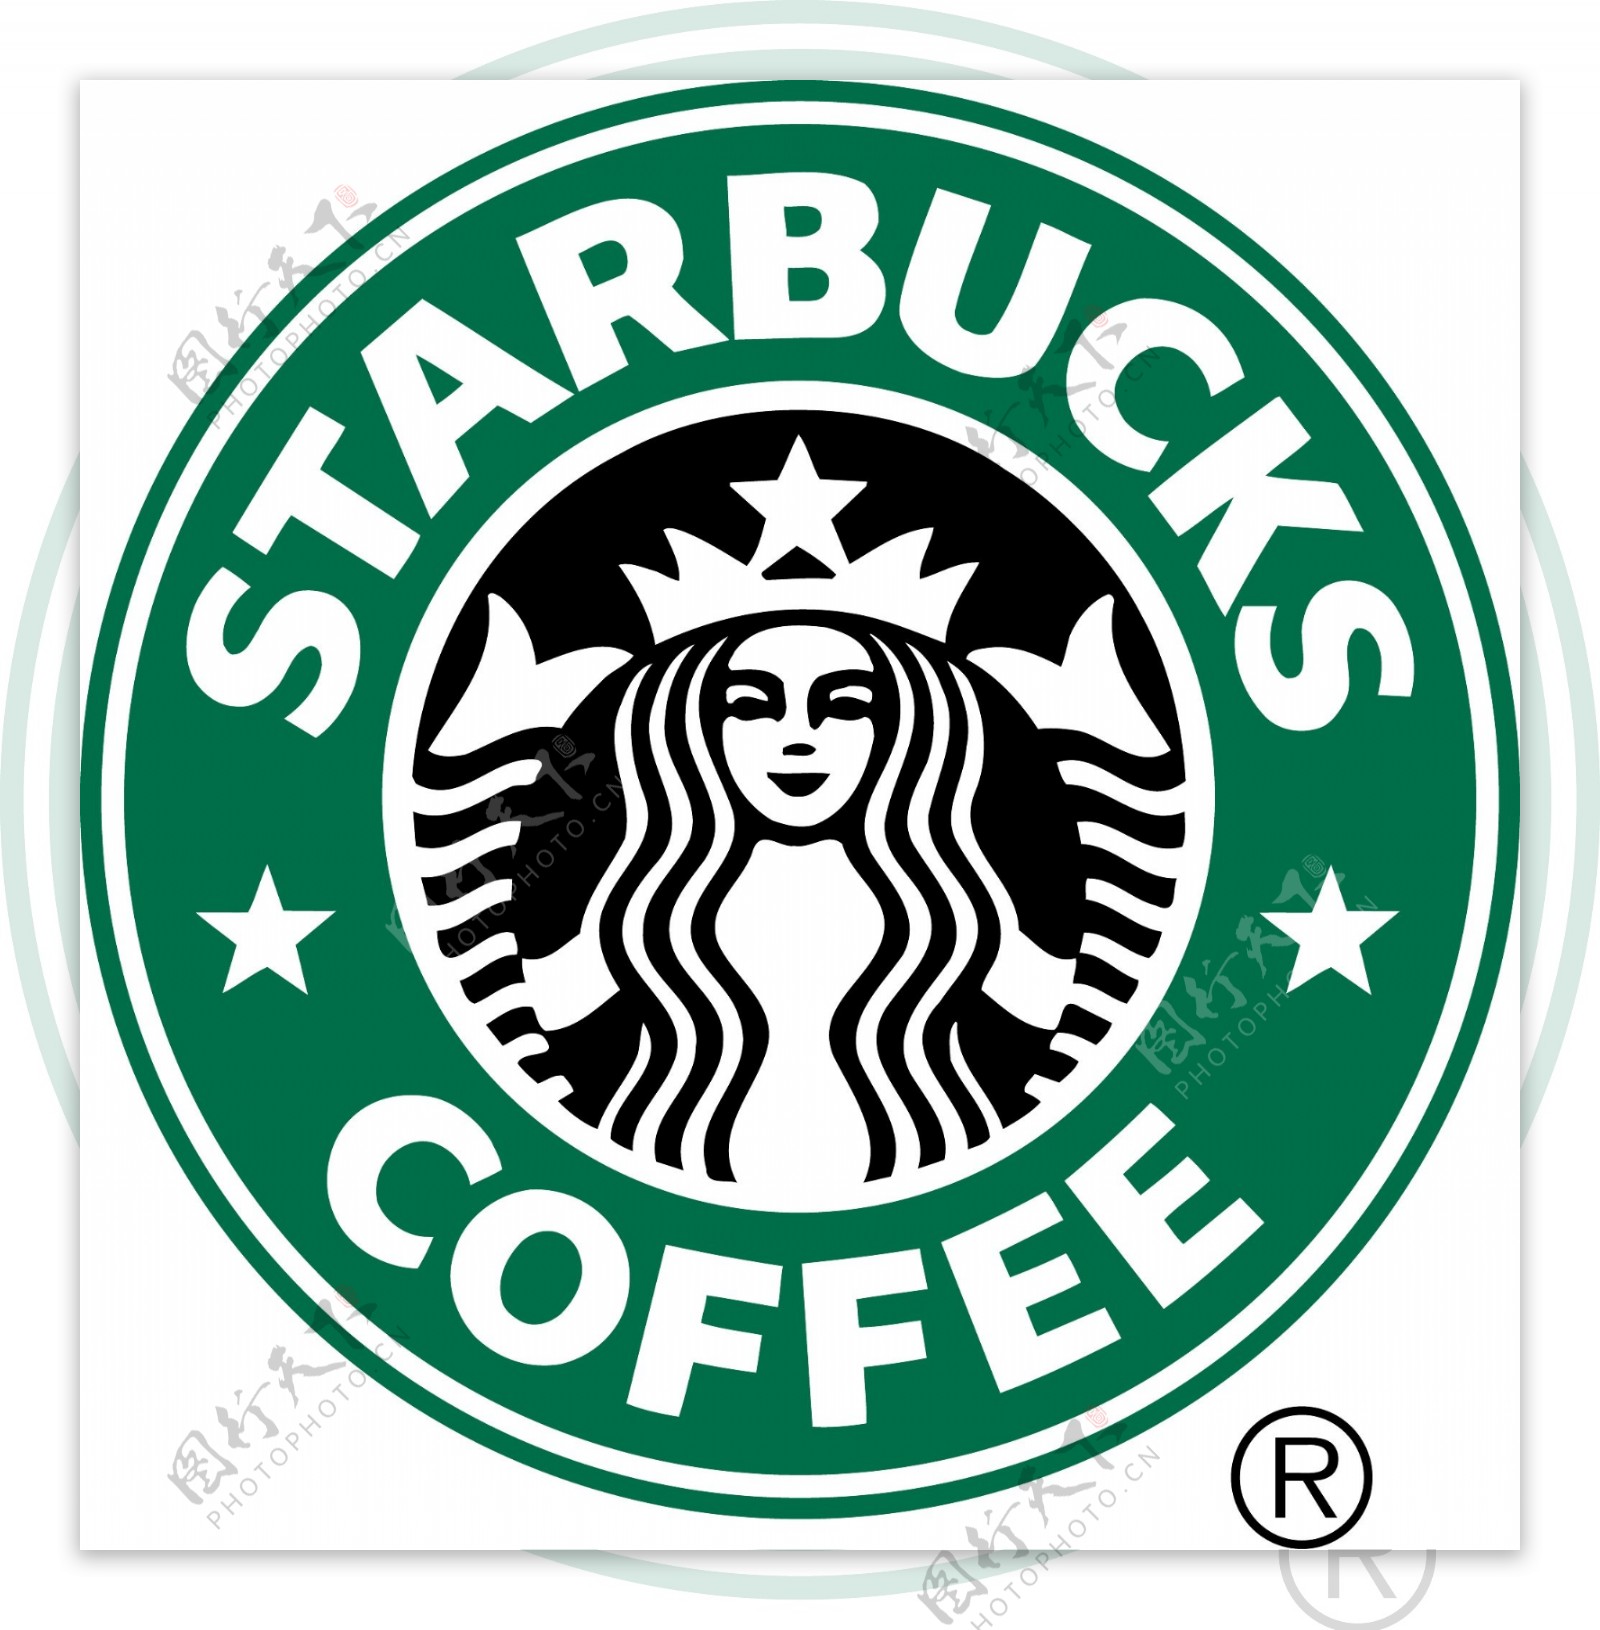 星巴客咖啡logo图片